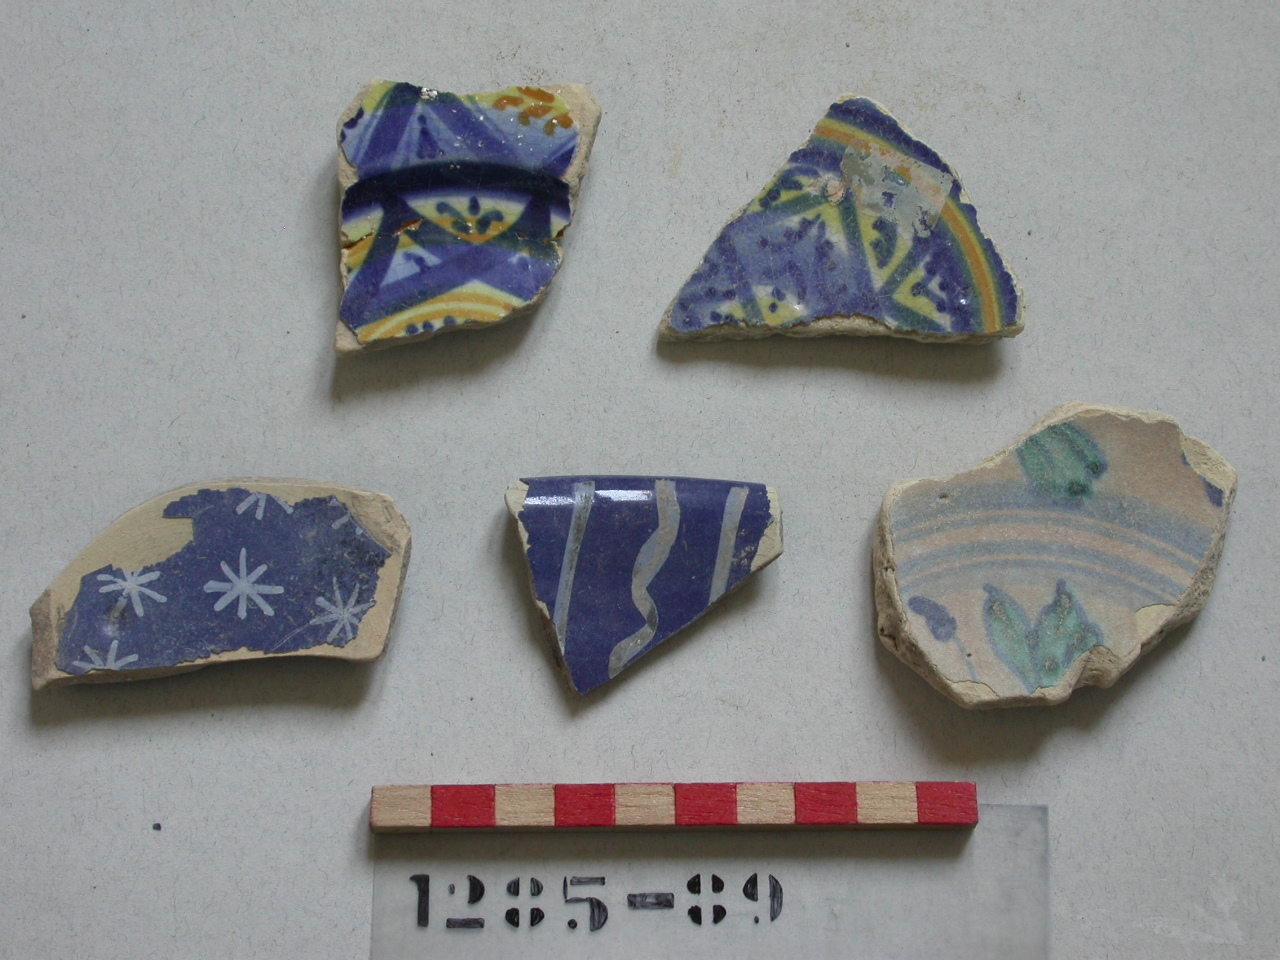 motivi decorativi geometrici (scodella, frammento) - produzione romagnola (seconda metà sec. XVI)